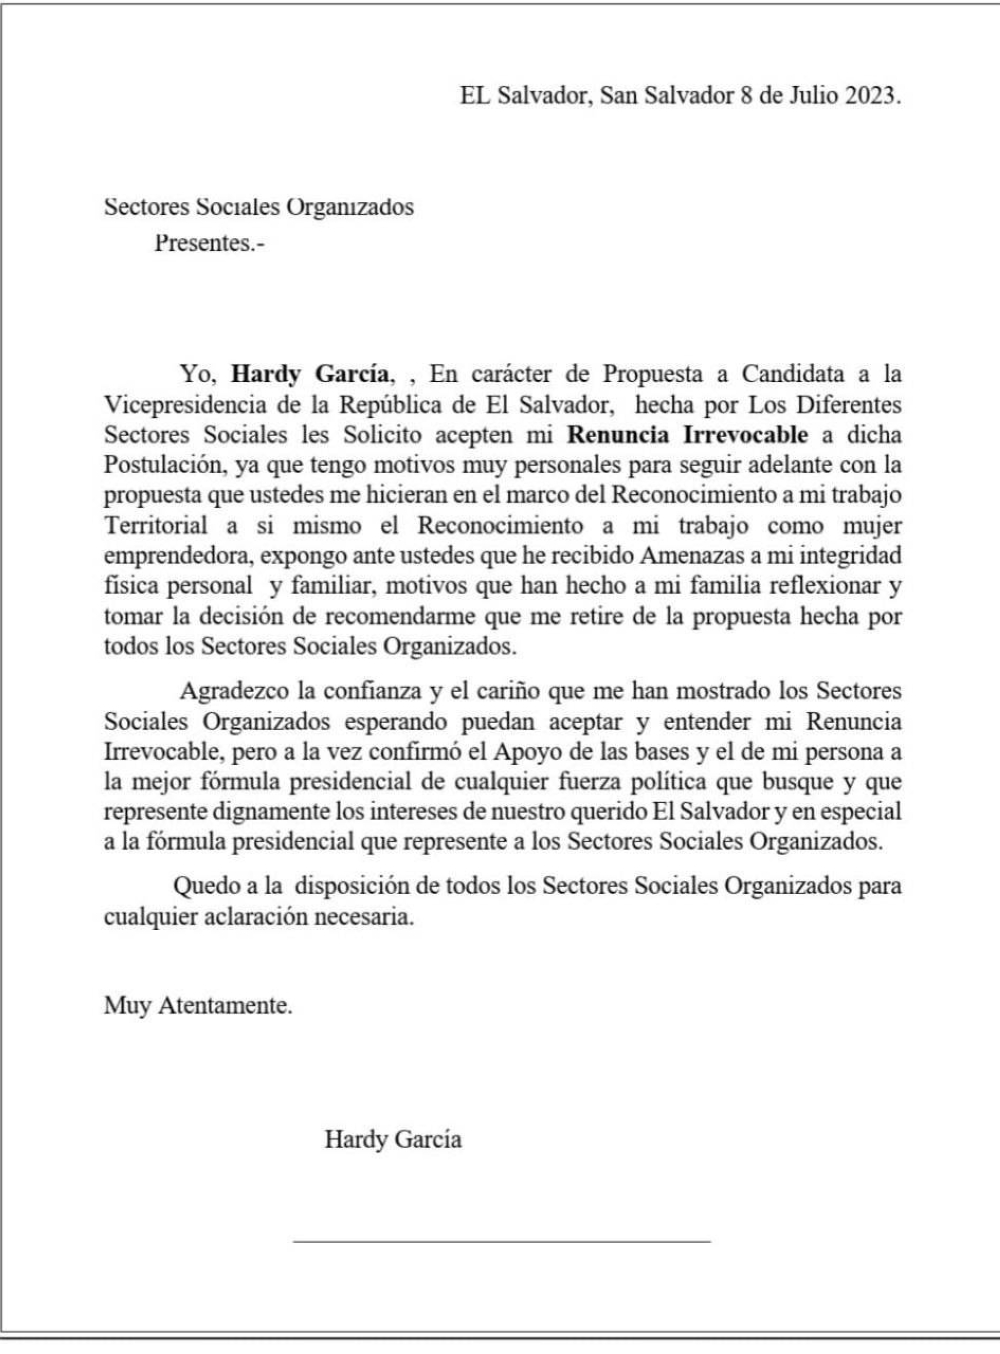 Carta de Hardy García en la que anuncia su renuncia por amenazas contra su persona y su familia.